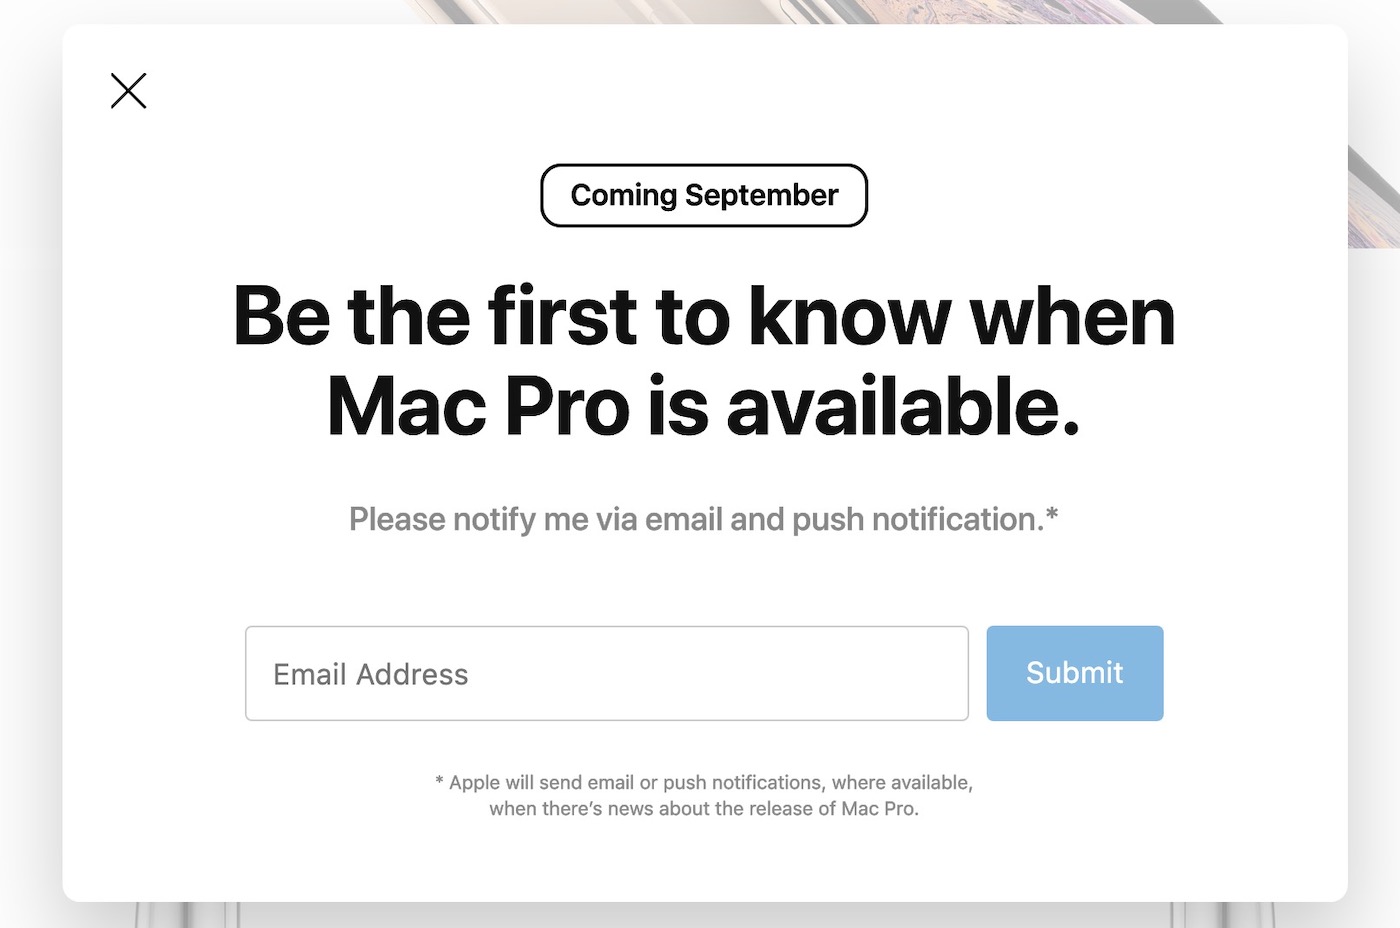 Le nouveau Mac Pro pourrait arriver en septembre selon le site d’Apple